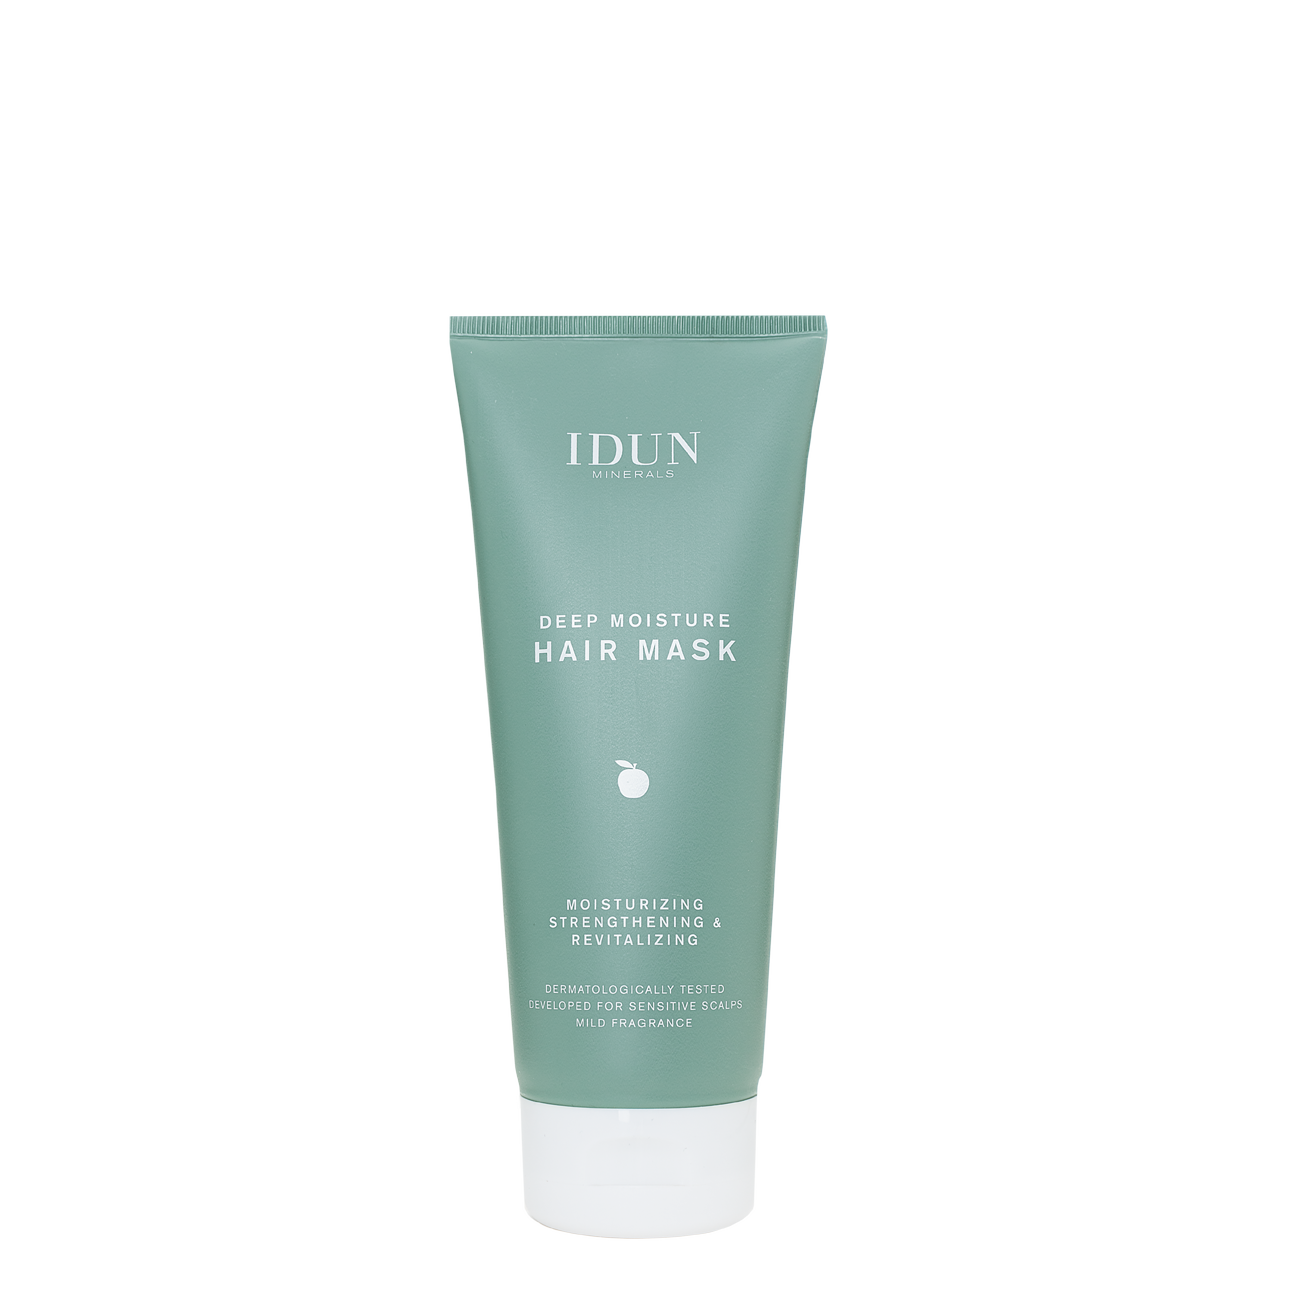 Se IDUN Minerals - Deep Moisture Hair Mask - 200 ml hos Duft og Natur